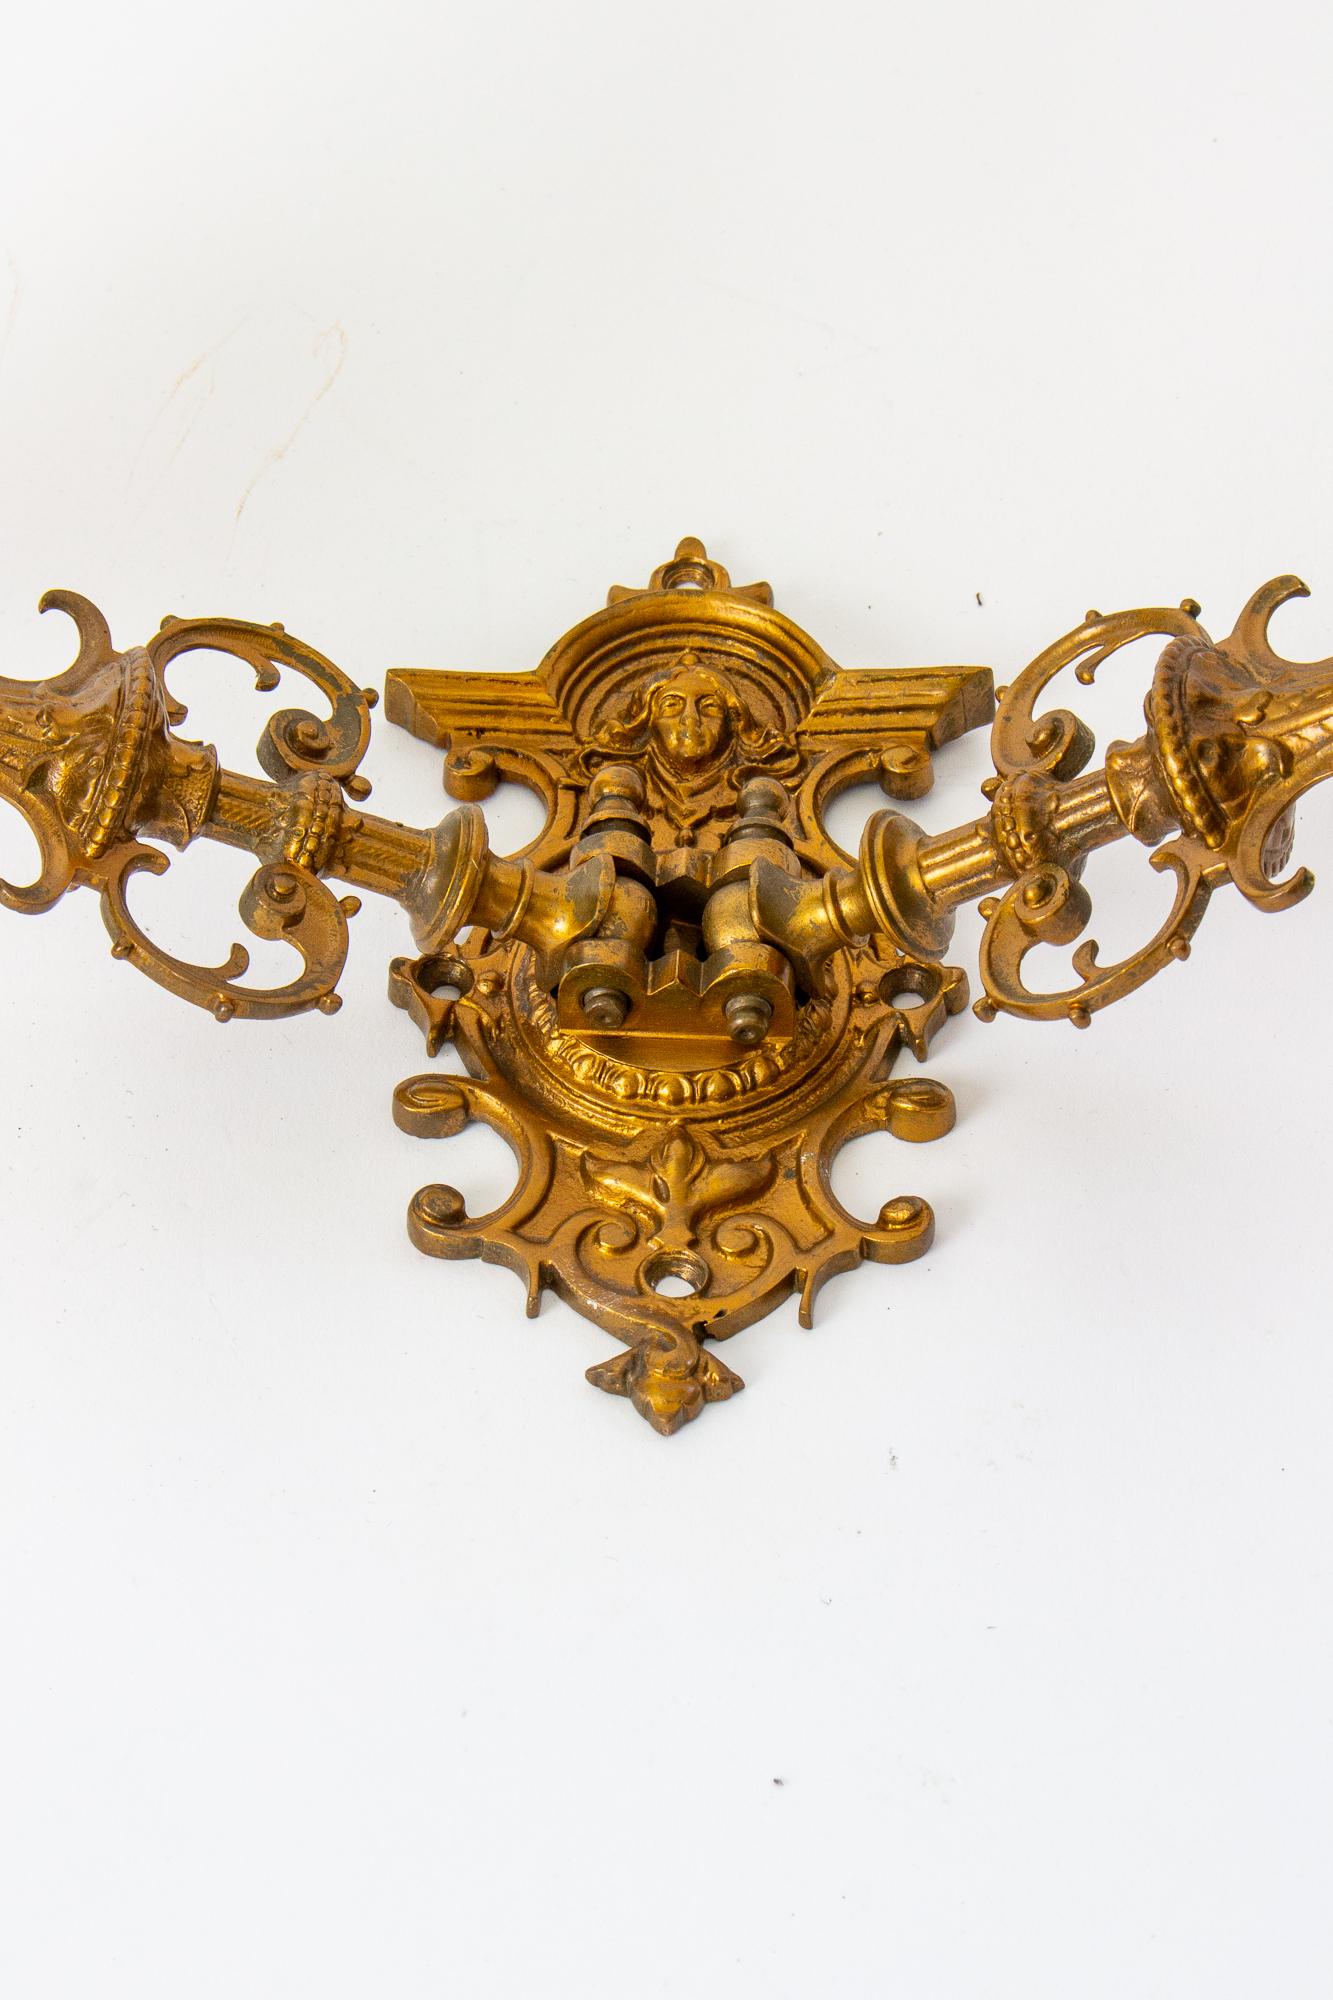 Ein Paar viktorianische Schwenkarmleuchter. Gotisch-revivalistischer Stil, mit zwei Armen. Auf der Rückseite ist das Gesicht einer Frau abgebildet. Aus Bronze gegossen und vergoldet. Für Kerzen. C. 1860.